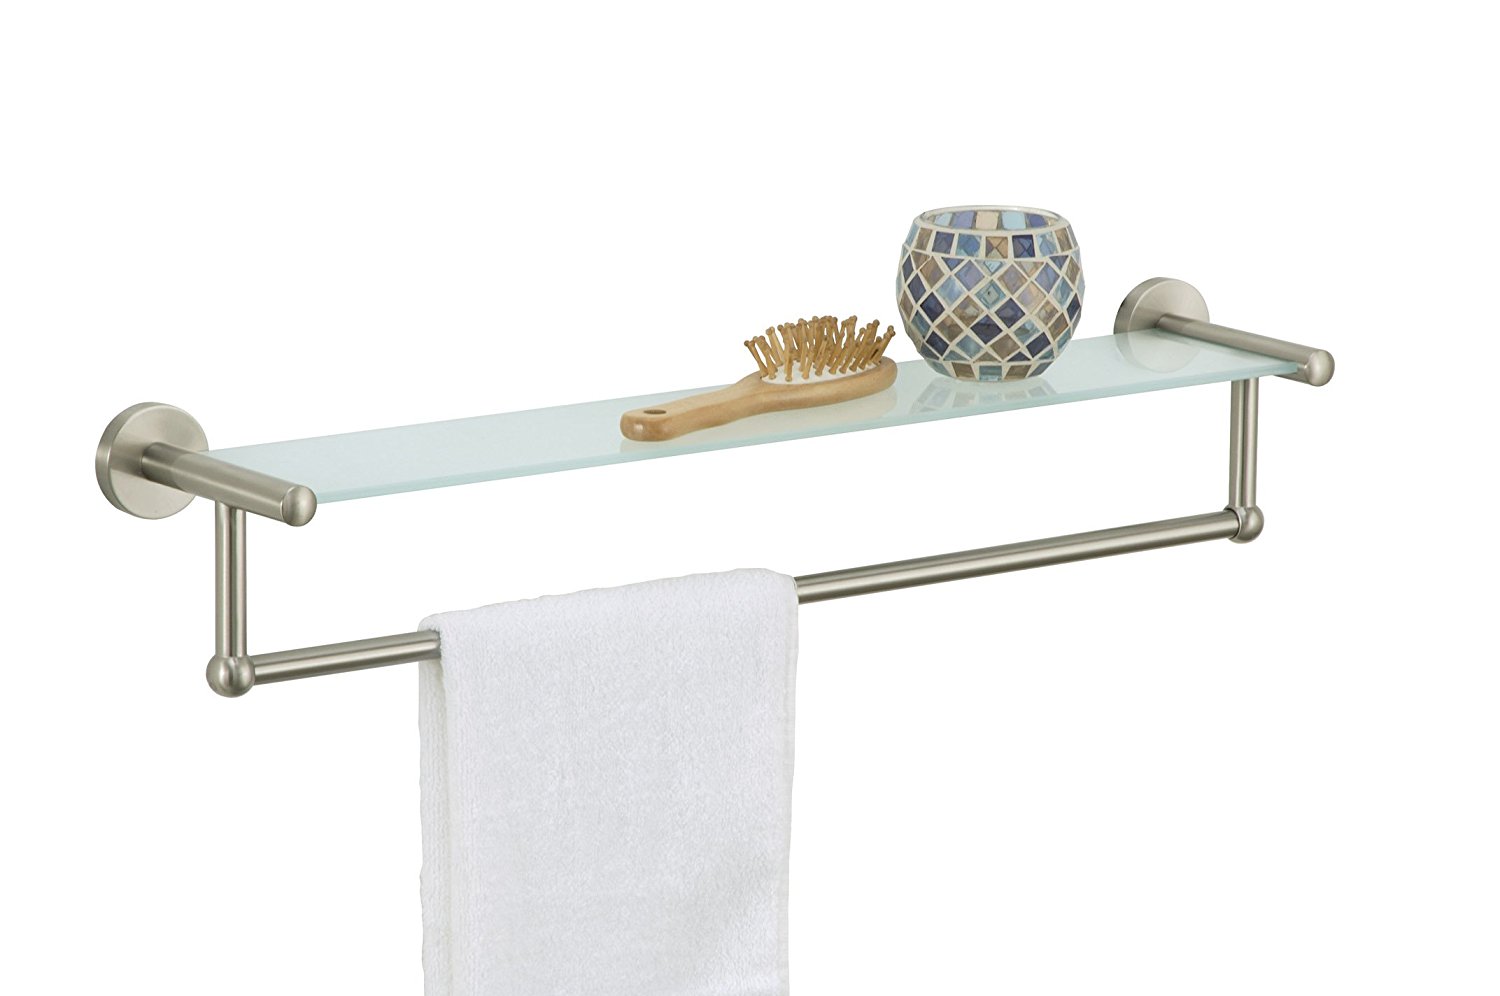 Organize It All Satin Nickel Glass Shelf with Towel Bar